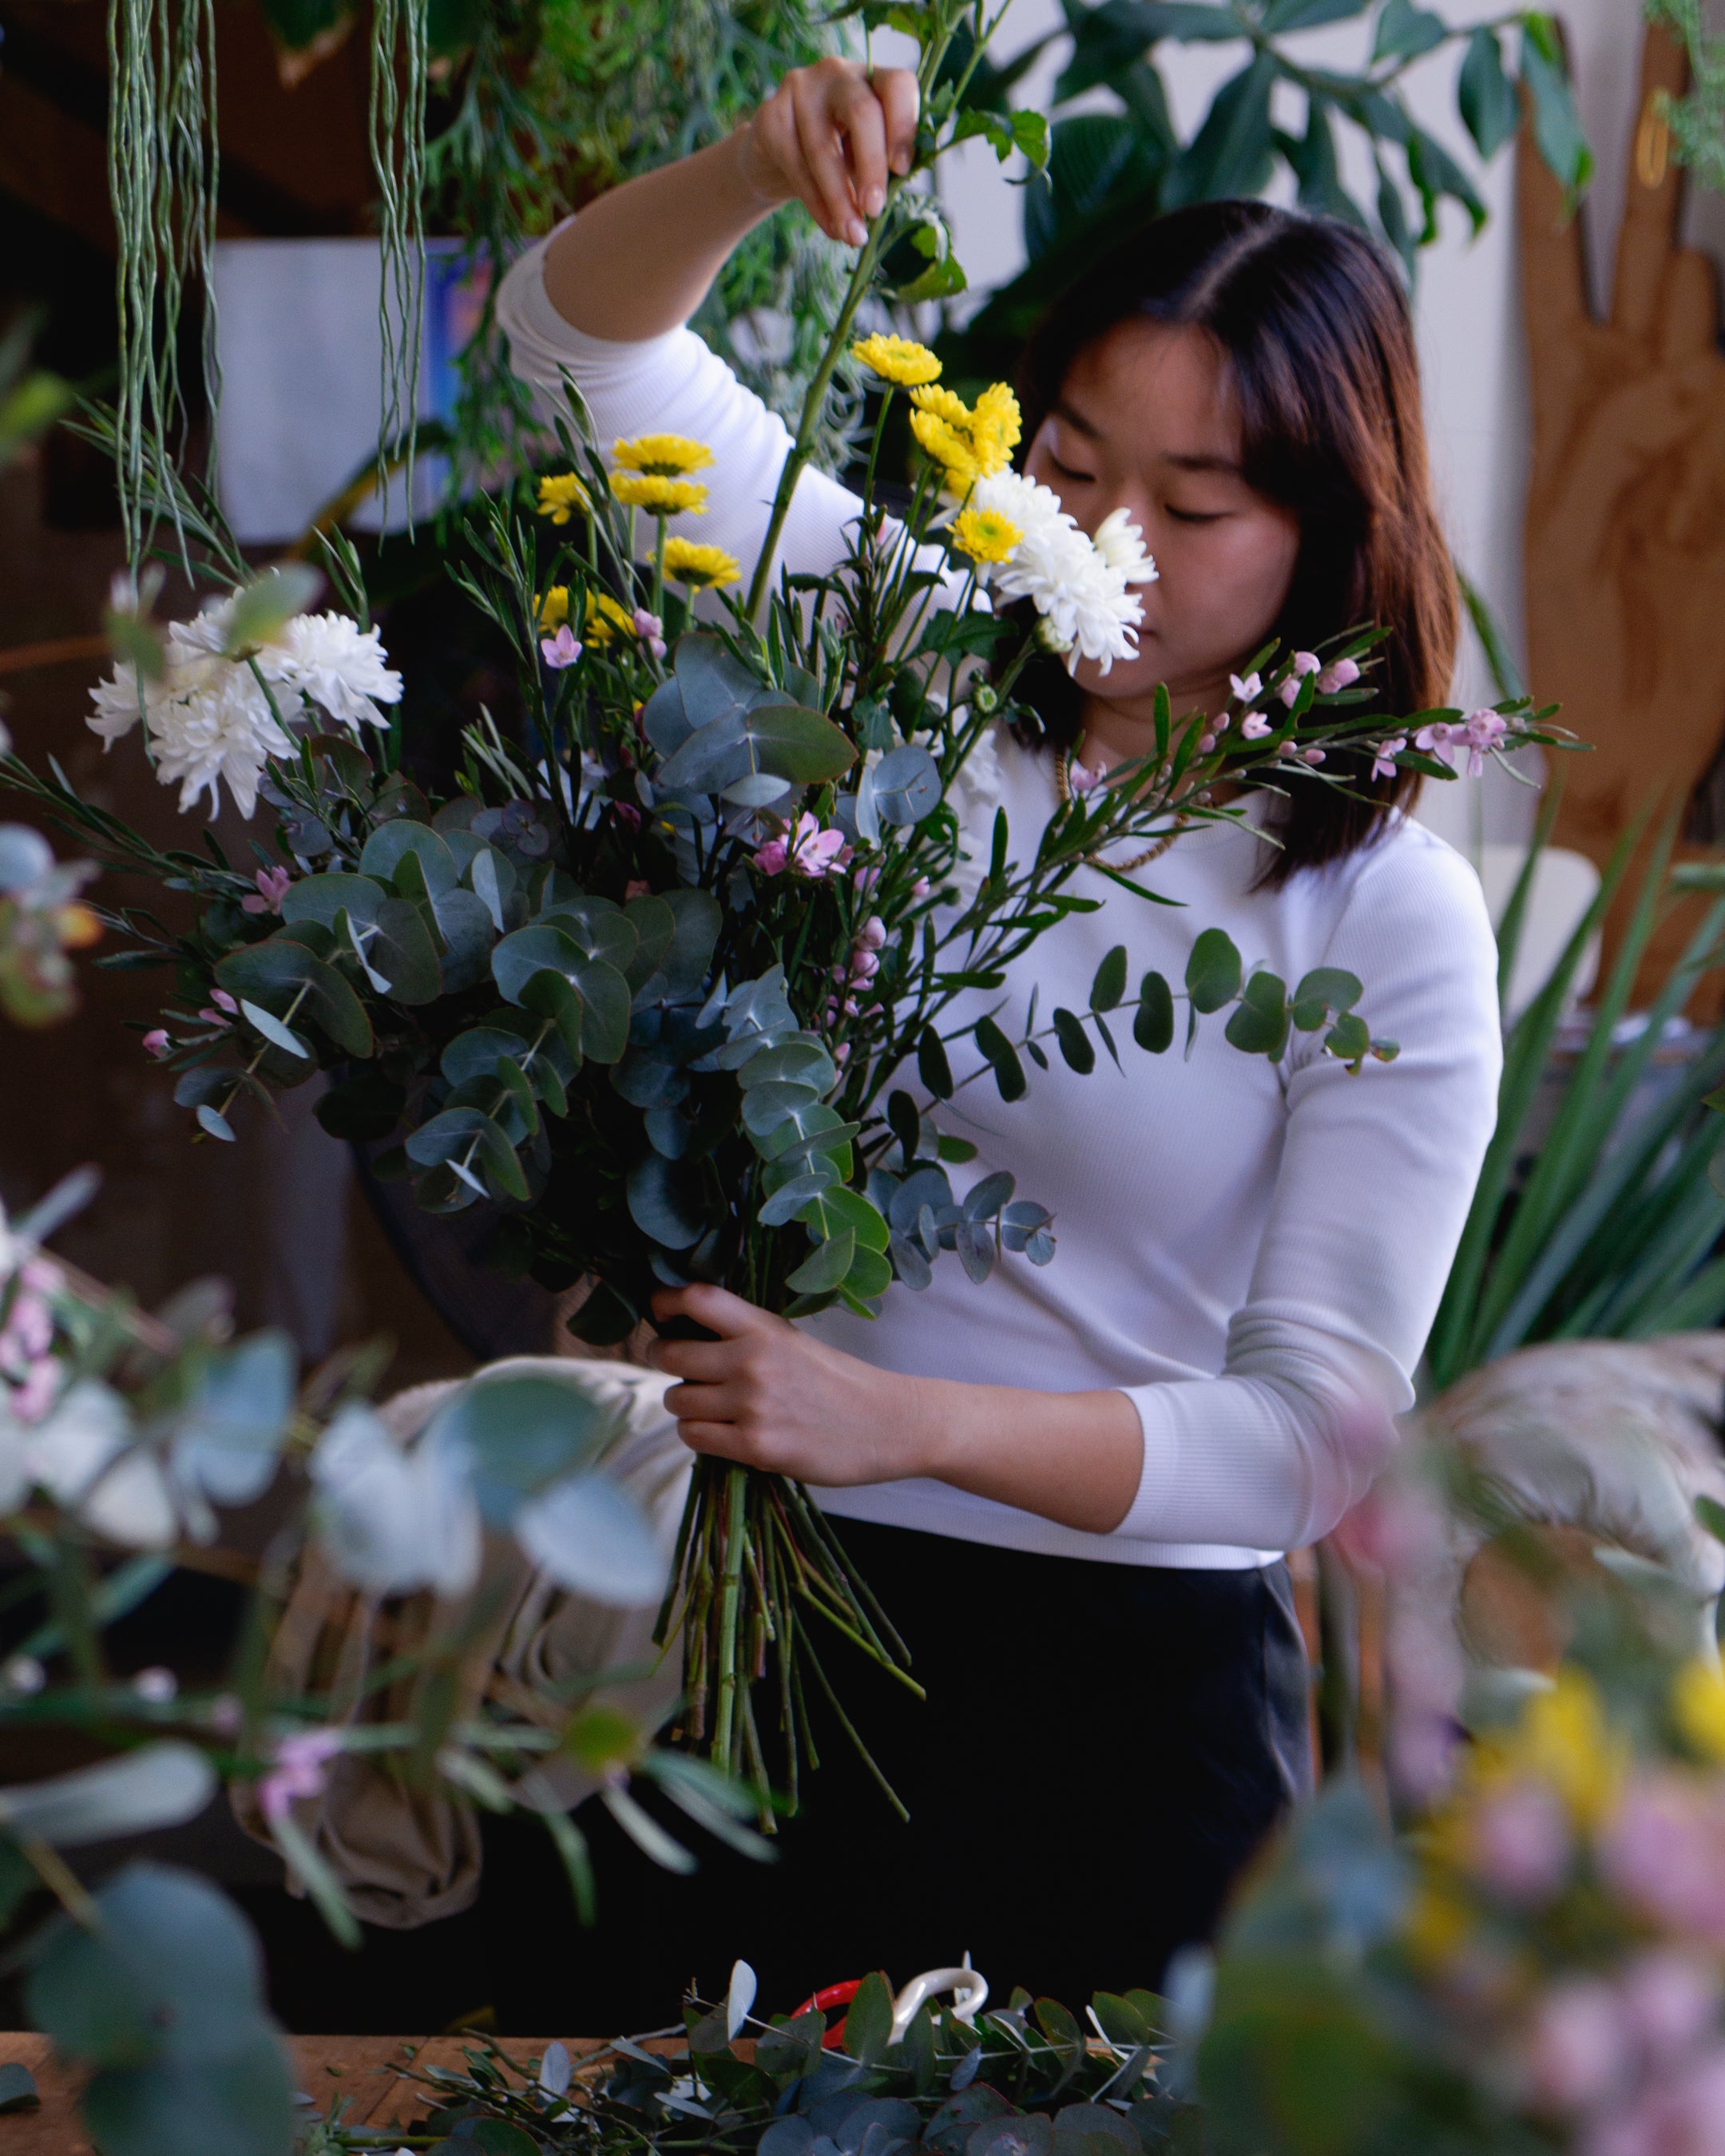 Student at flower workshop creating  floral arrangement.